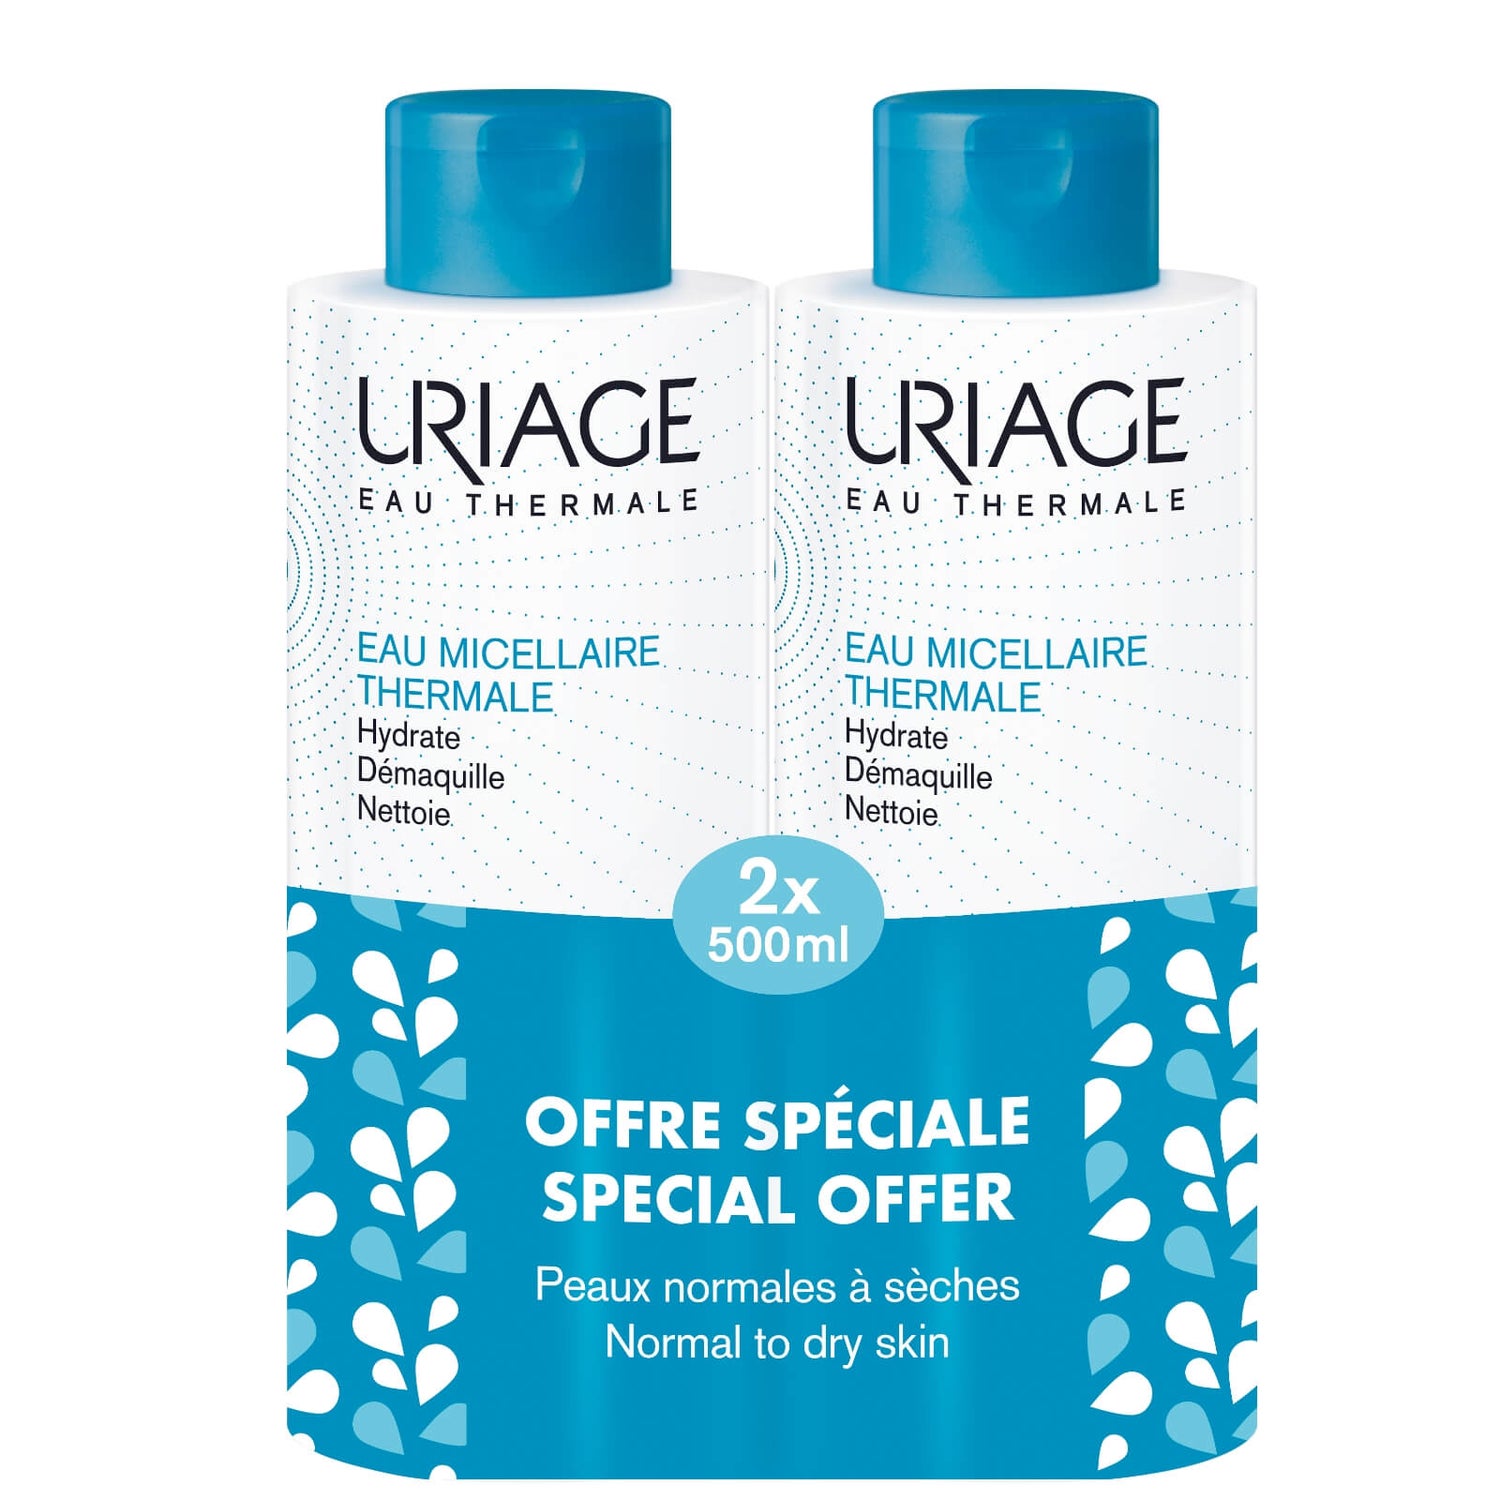 Uriage Thermal Micellar Water for Normal to Dry Skin płyn micelarny do skóry normalnej i suchej 500 ml (oferta specjalna)